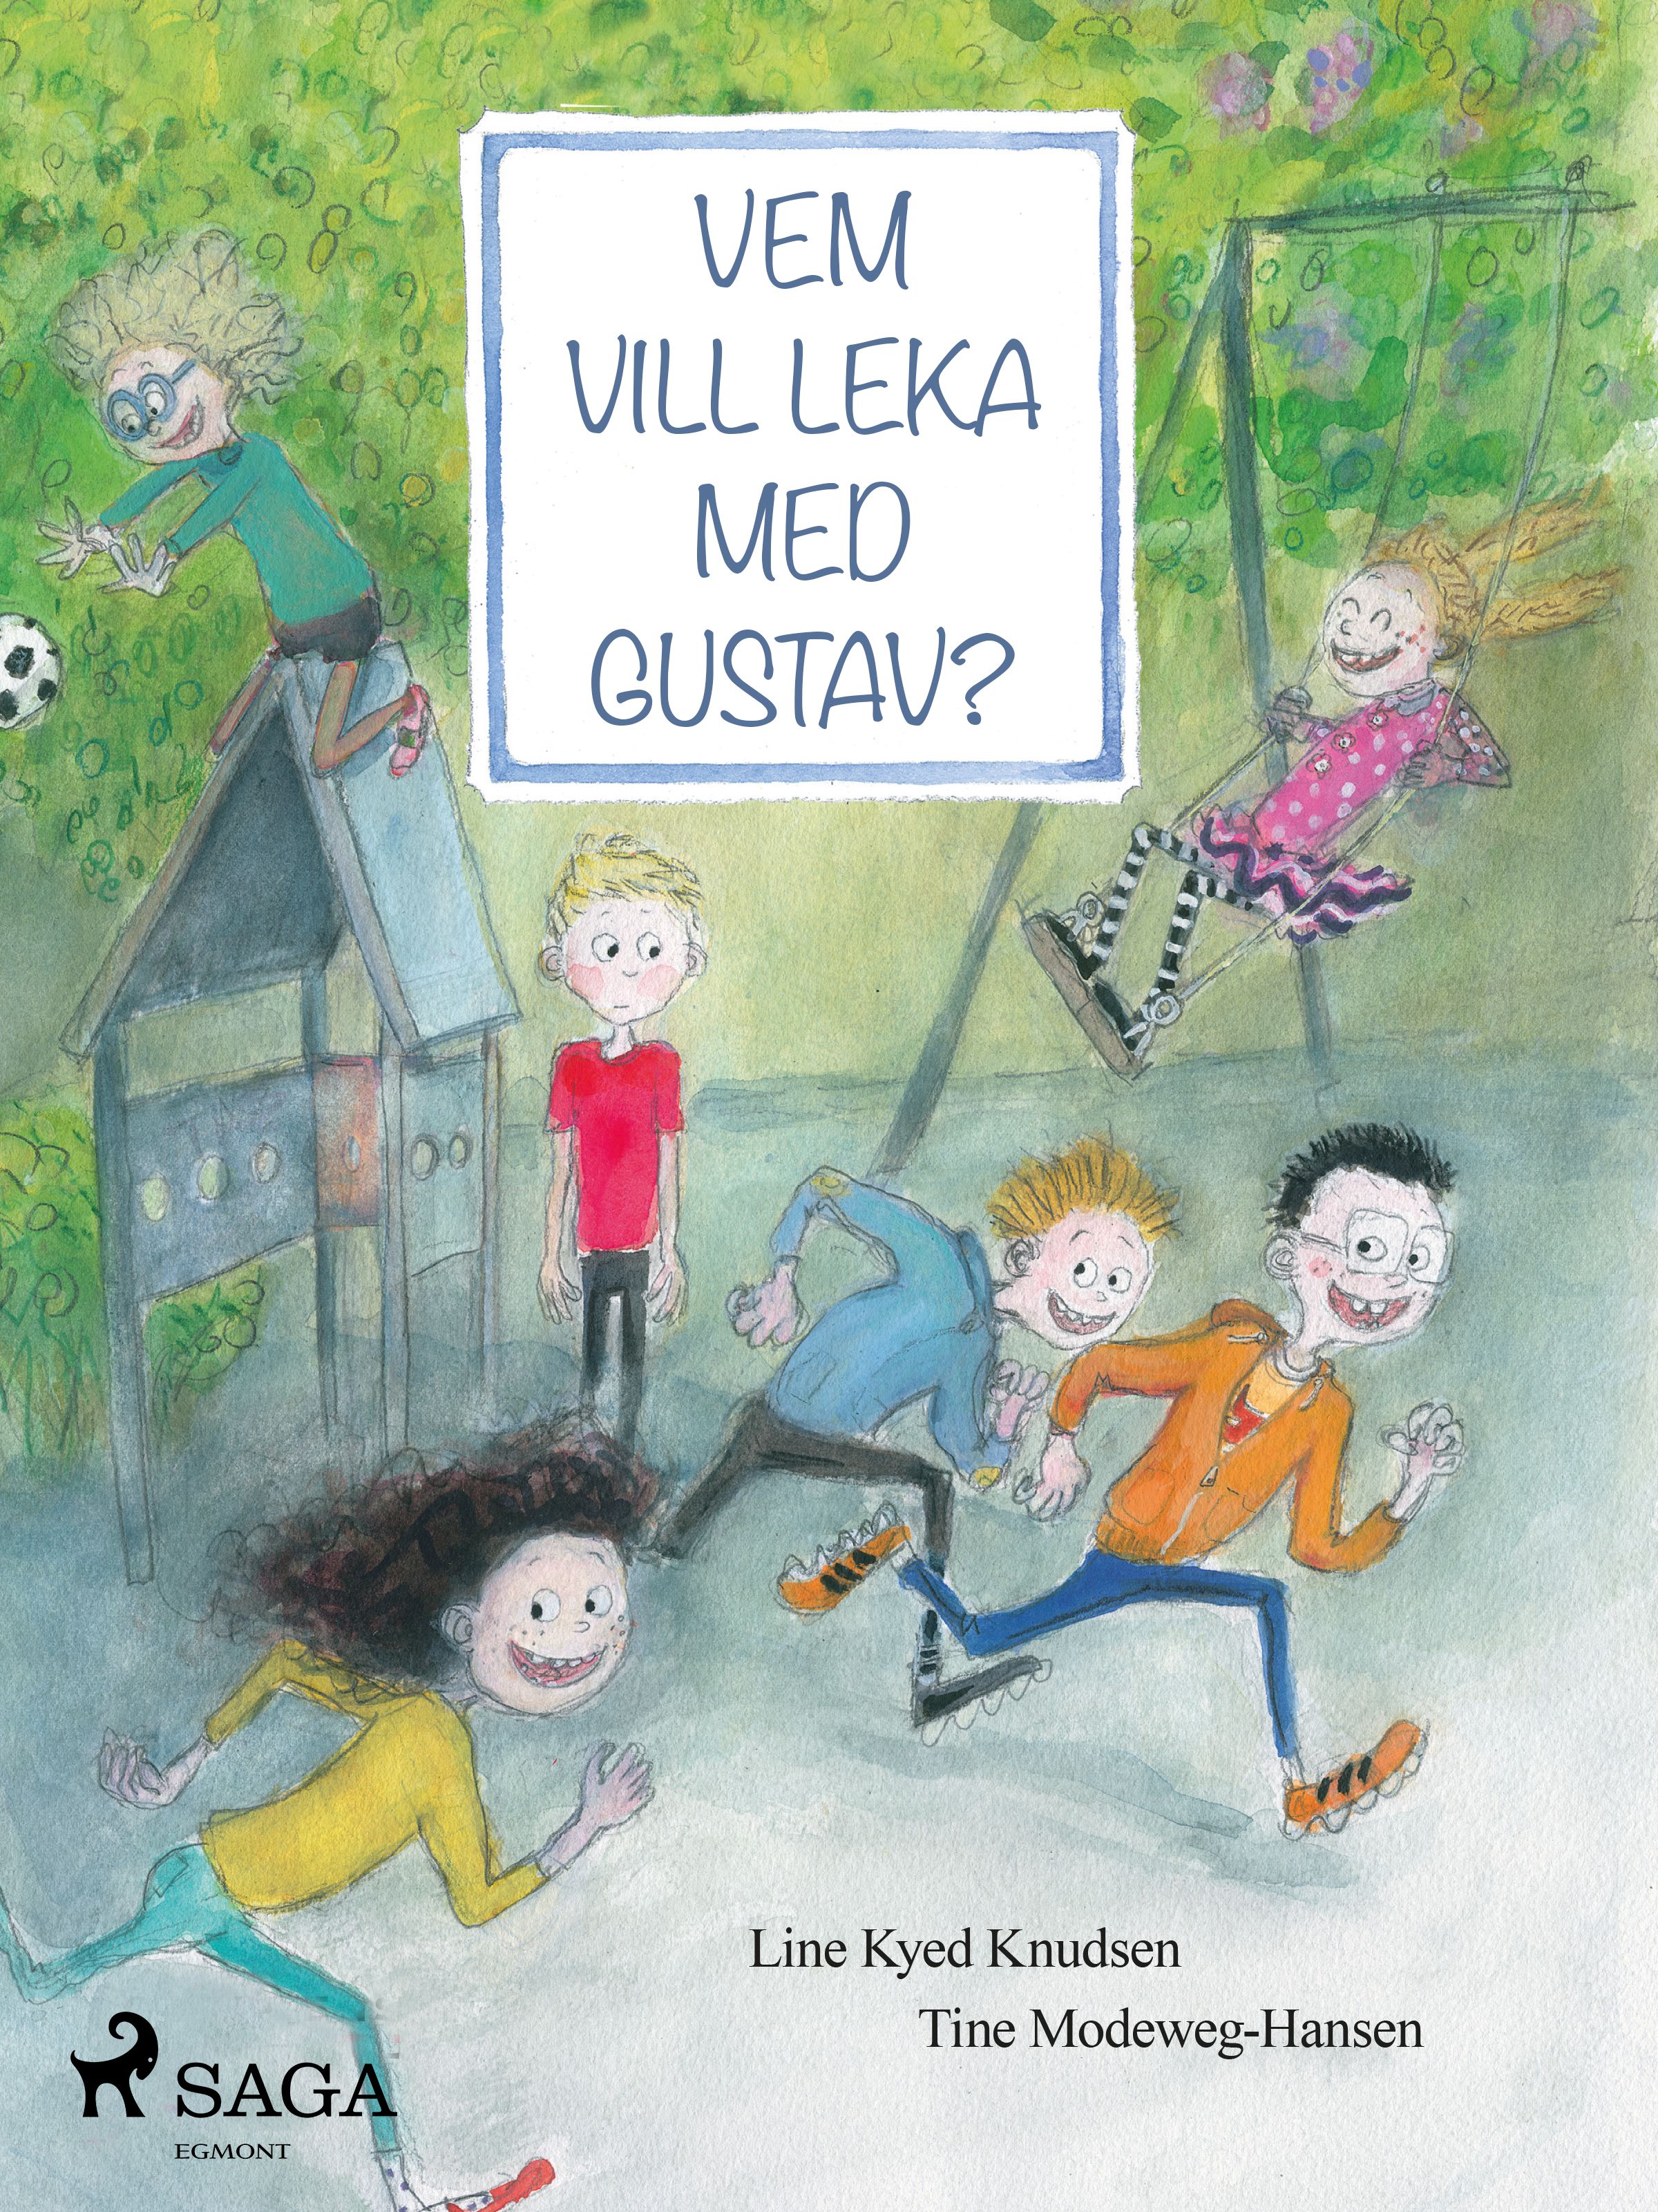 Vem vill leka med Gustav?, eBook by Line Kyed Knudsen